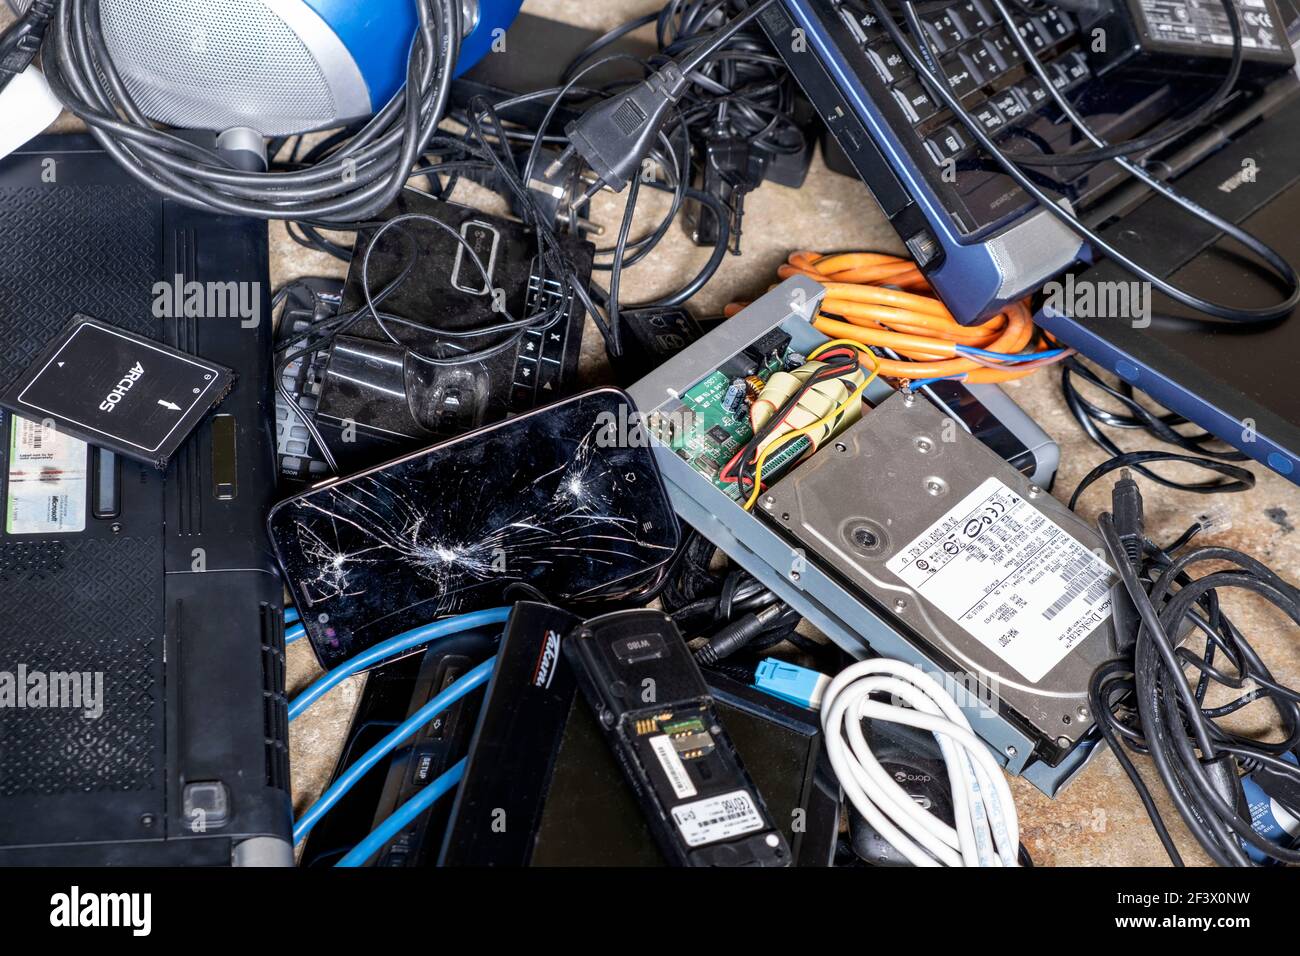 Rifiuti elettrici ed elettronici: Vari cavi, computer, telefoni, smartphone, dispositivi e componenti elettronici usati destinati allo smaltimento dei rifiuti. Foto Stock